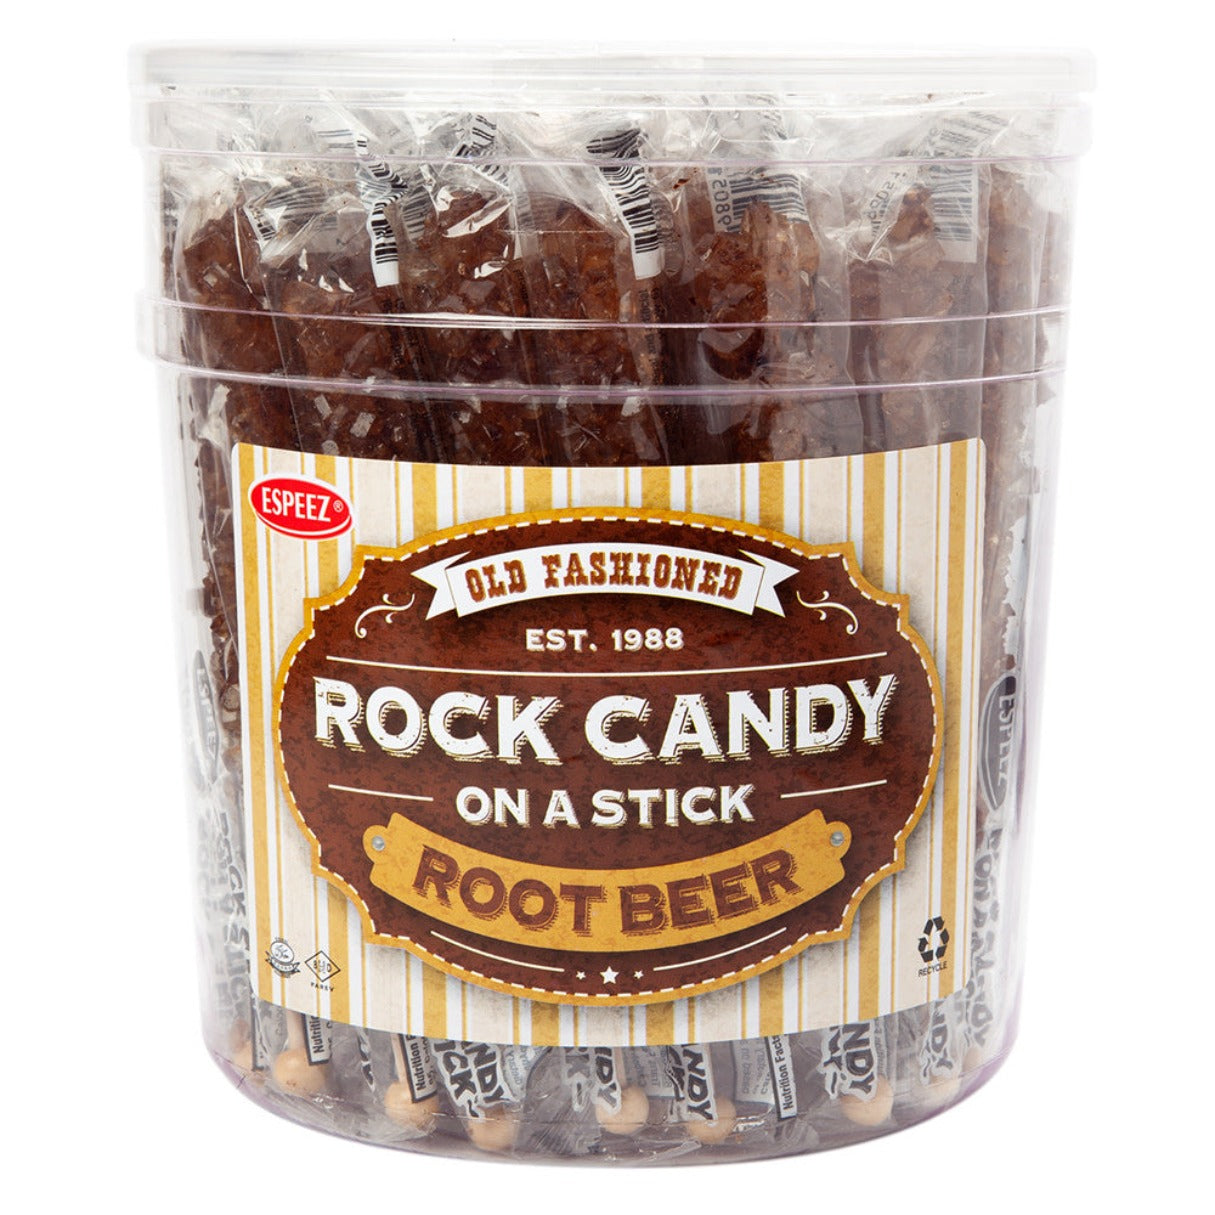 Espeez Rock Candy Sticks Brown Root Beer Jar 0.8oz - 36ct